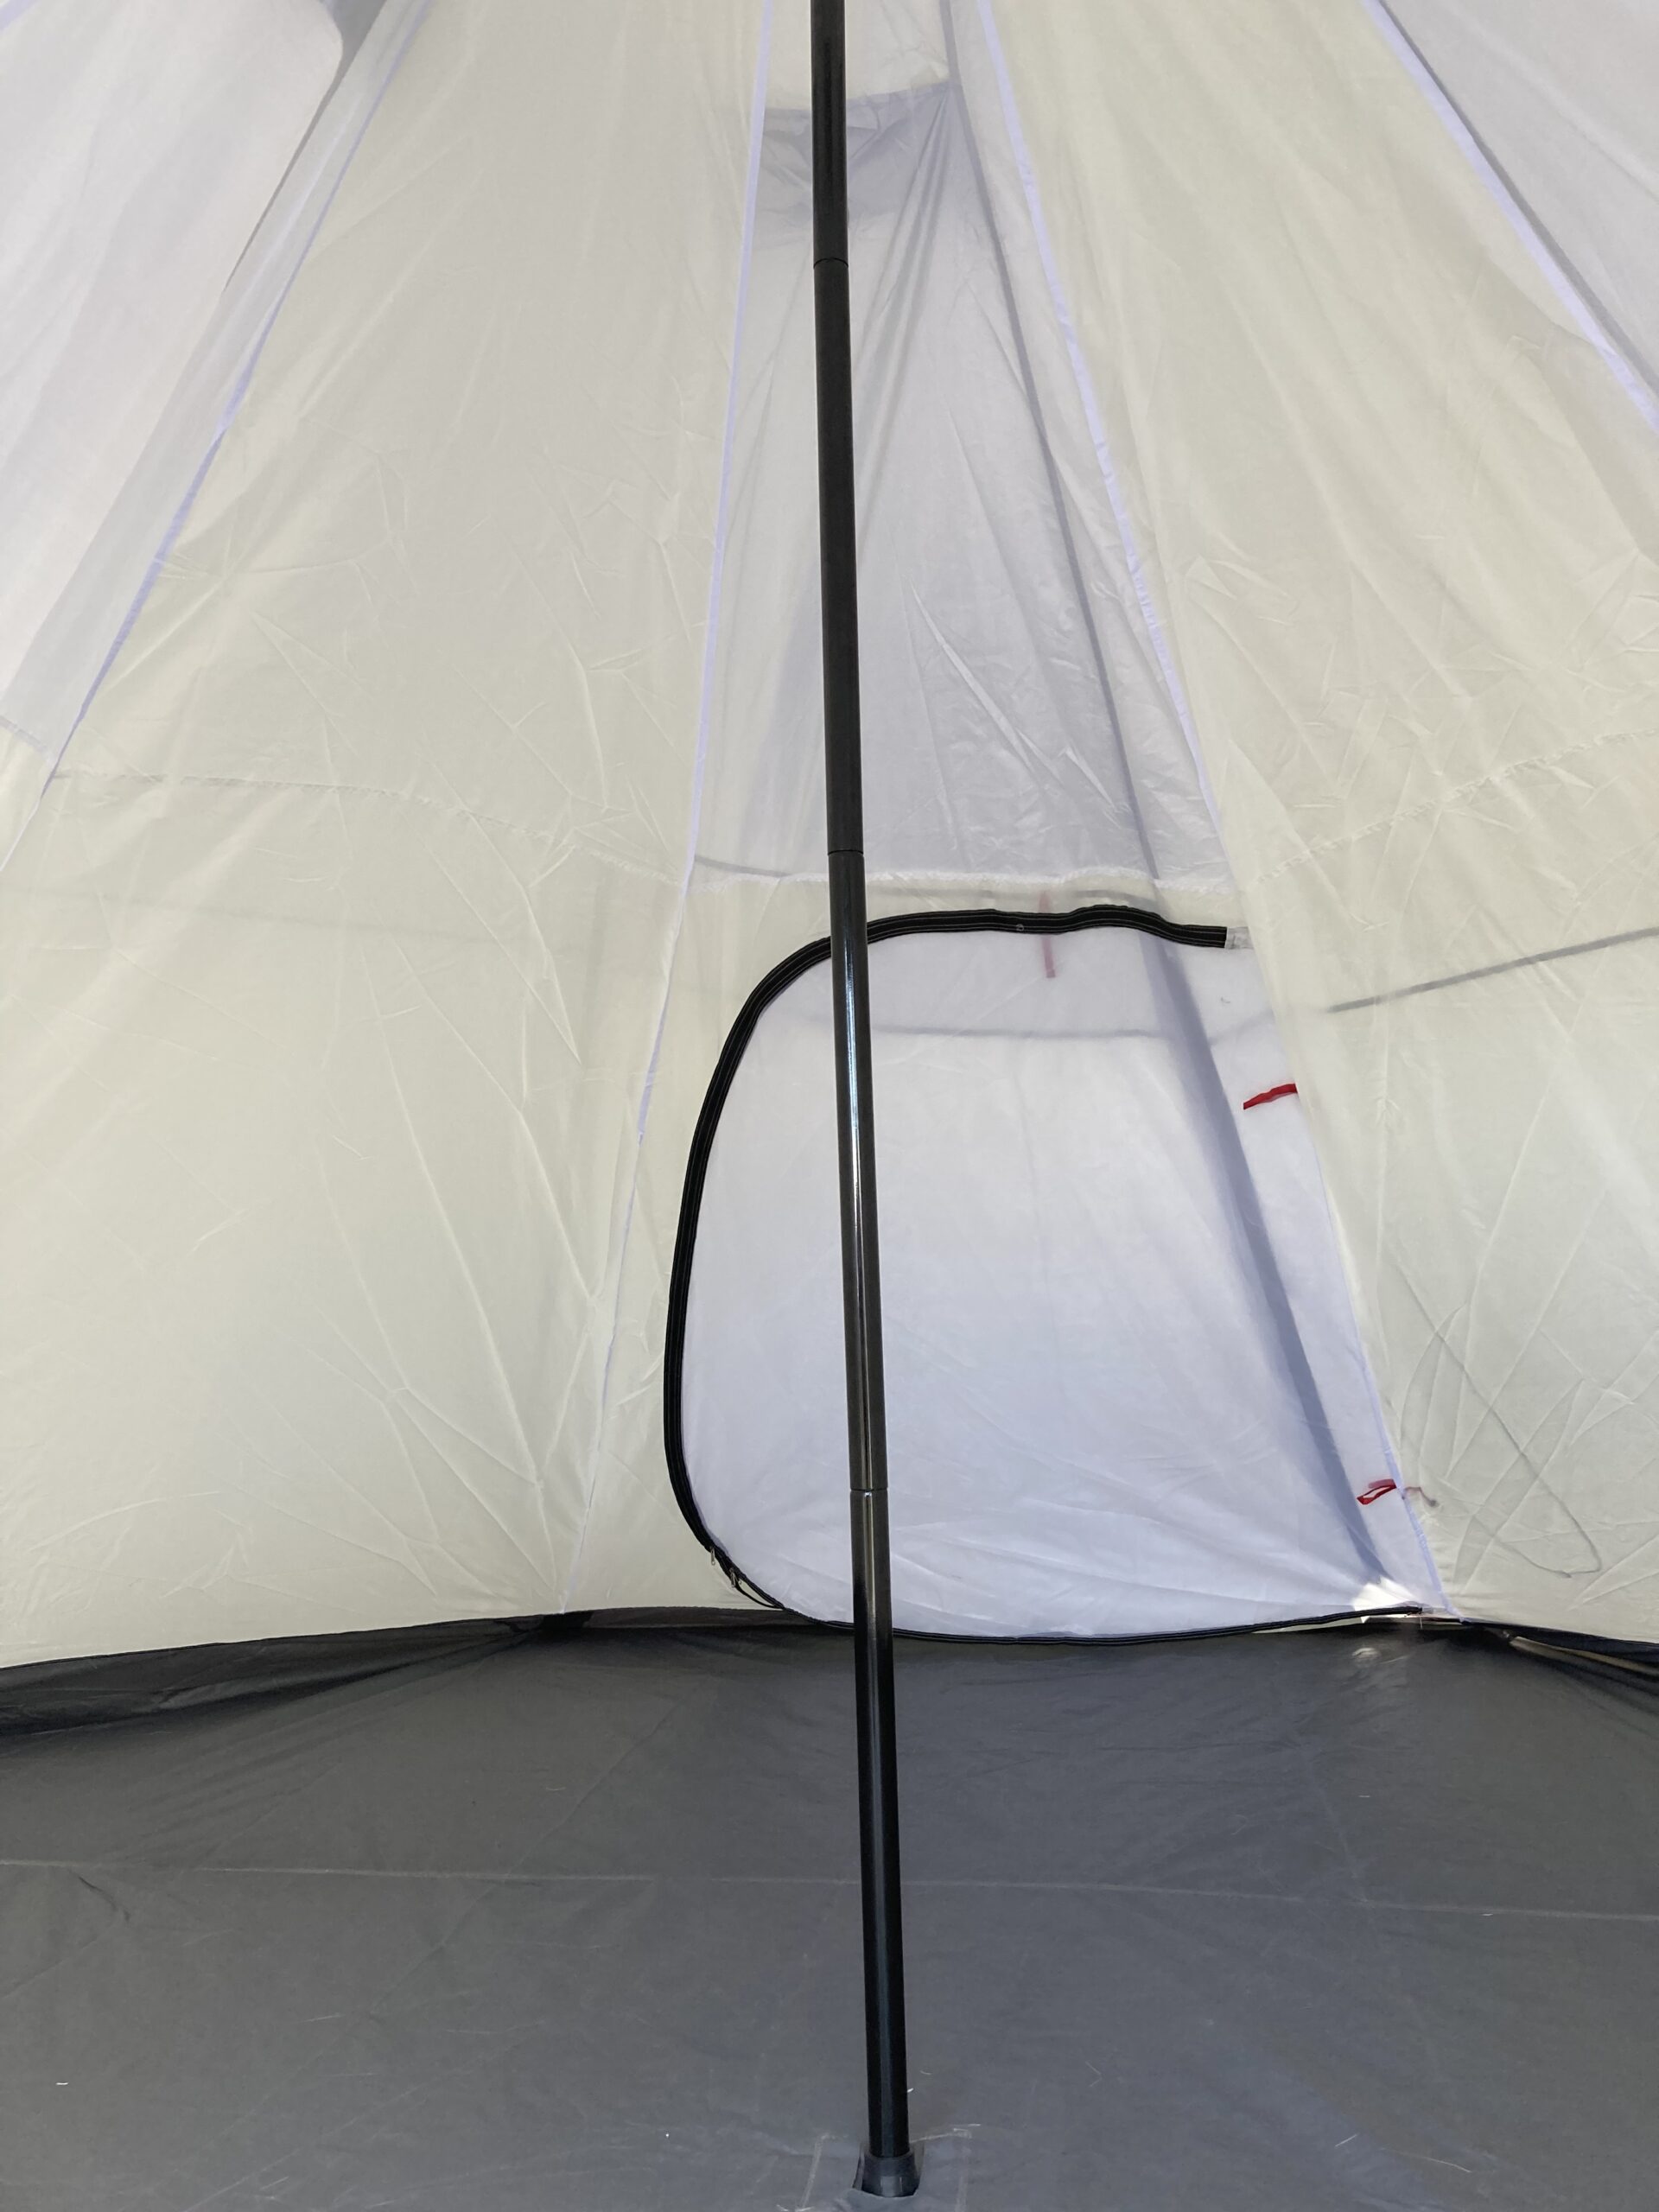 ソロキャンプのススメ お勧めテント ファミリーテント | サードファイヤーブログ